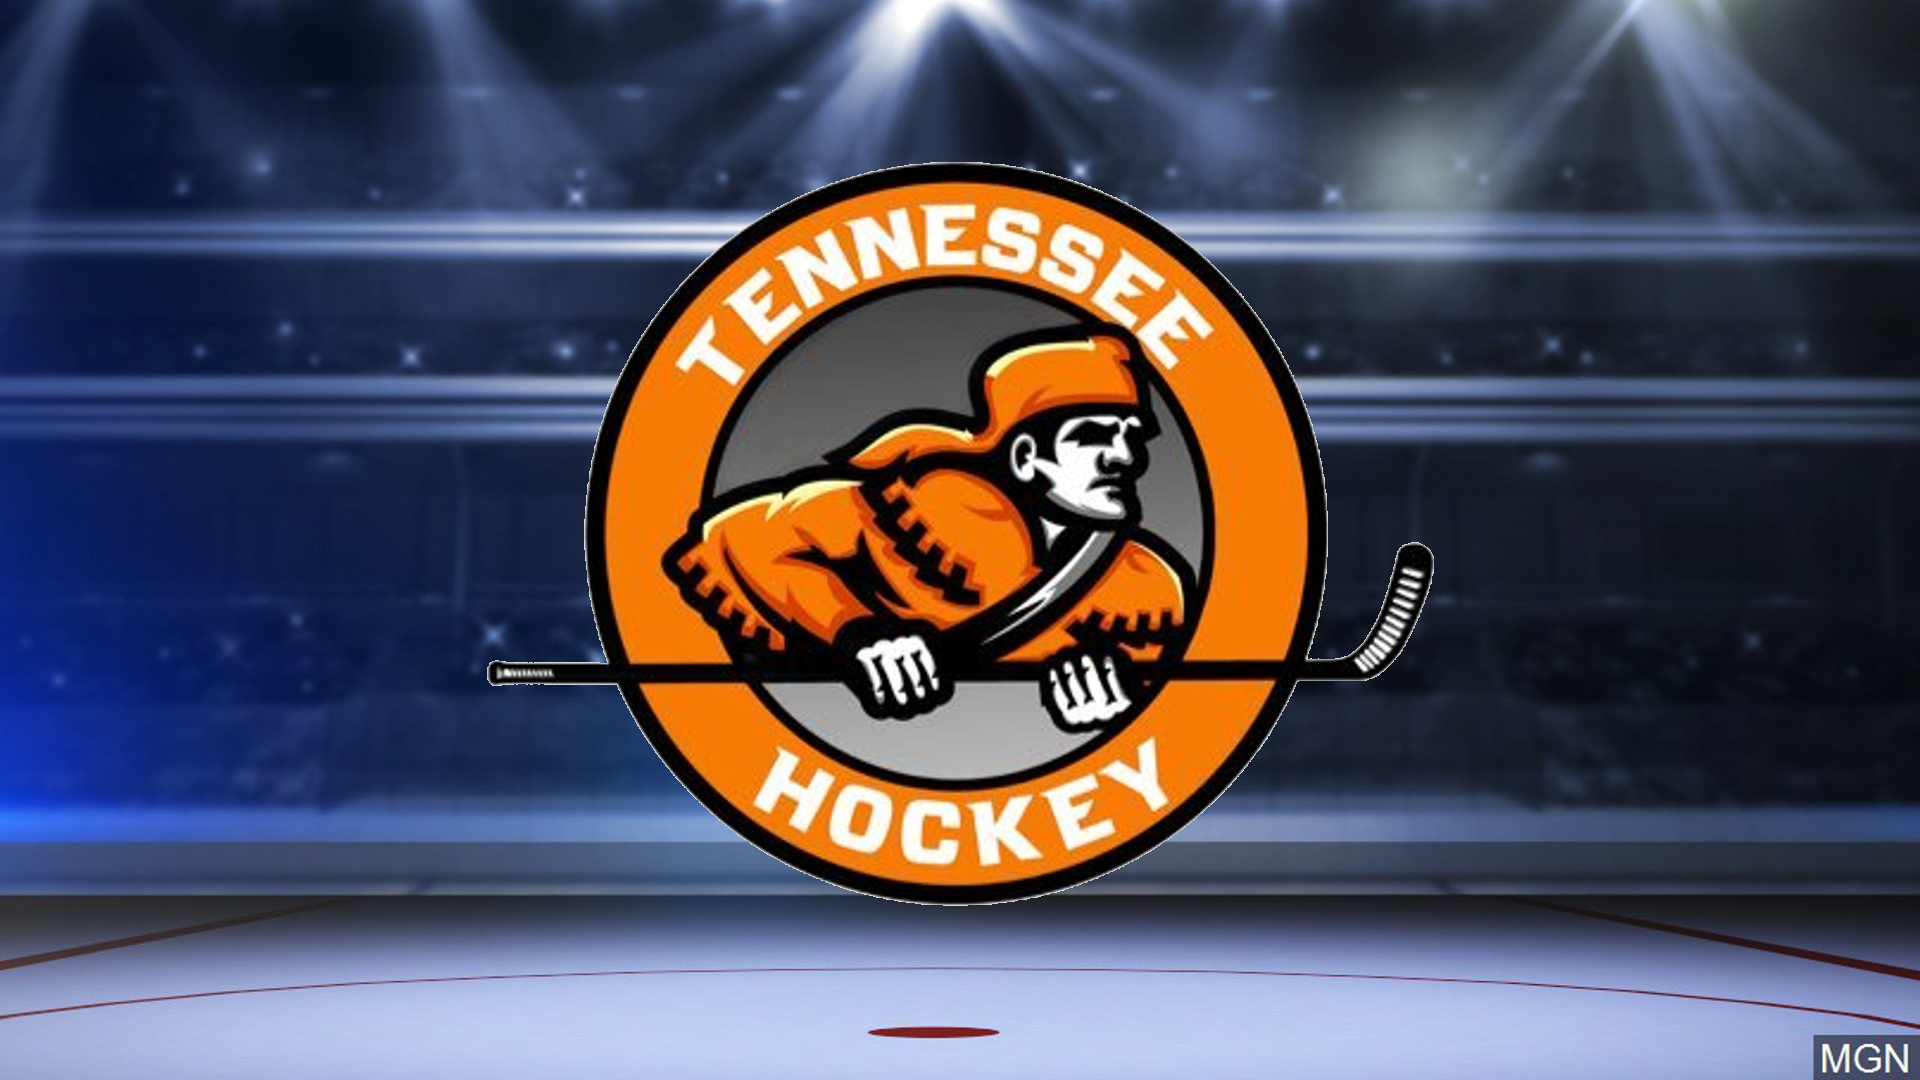 University of Tennessee Ice Hockey